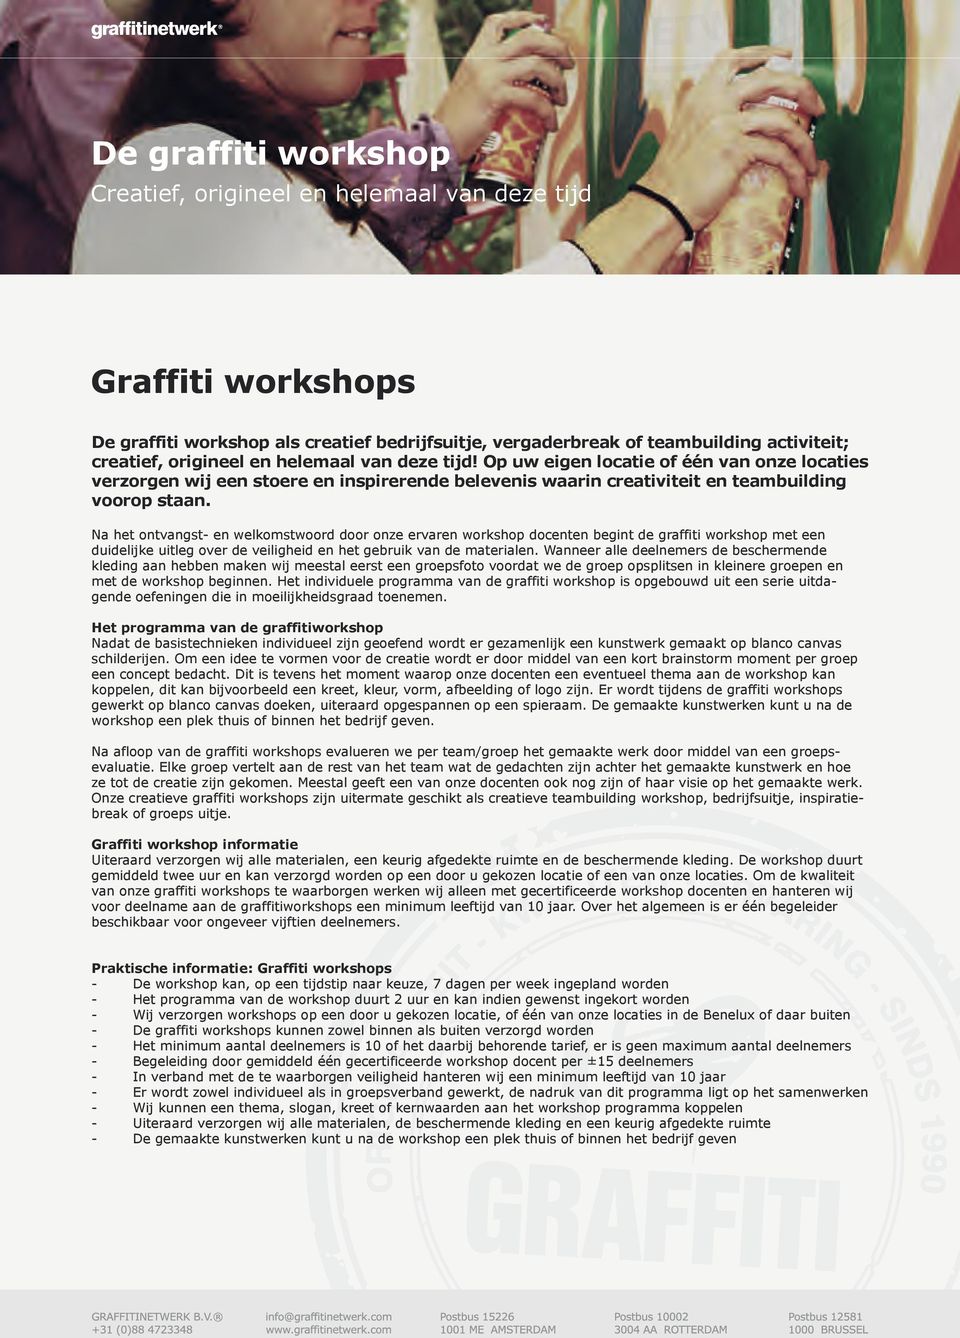 Na het ontvangst- en welkomstwoord door onze ervaren workshop docenten begint de graffiti workshop met een duidelijke uitleg over de veiligheid en het gebruik van de materialen.